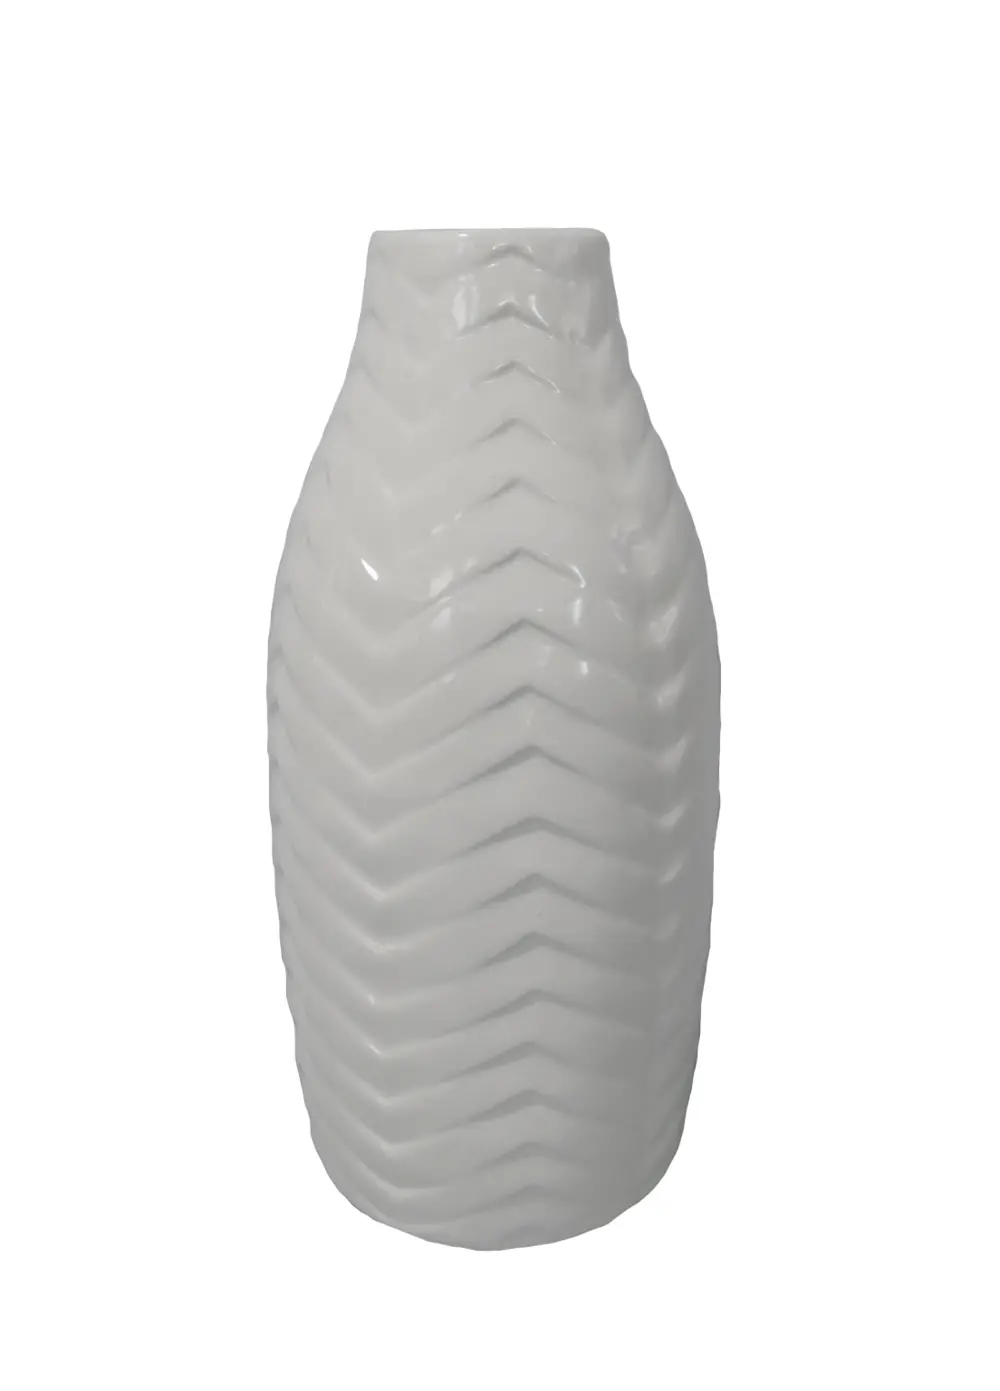 12 Inch White Chevron Pattern Ceramic Vase-1